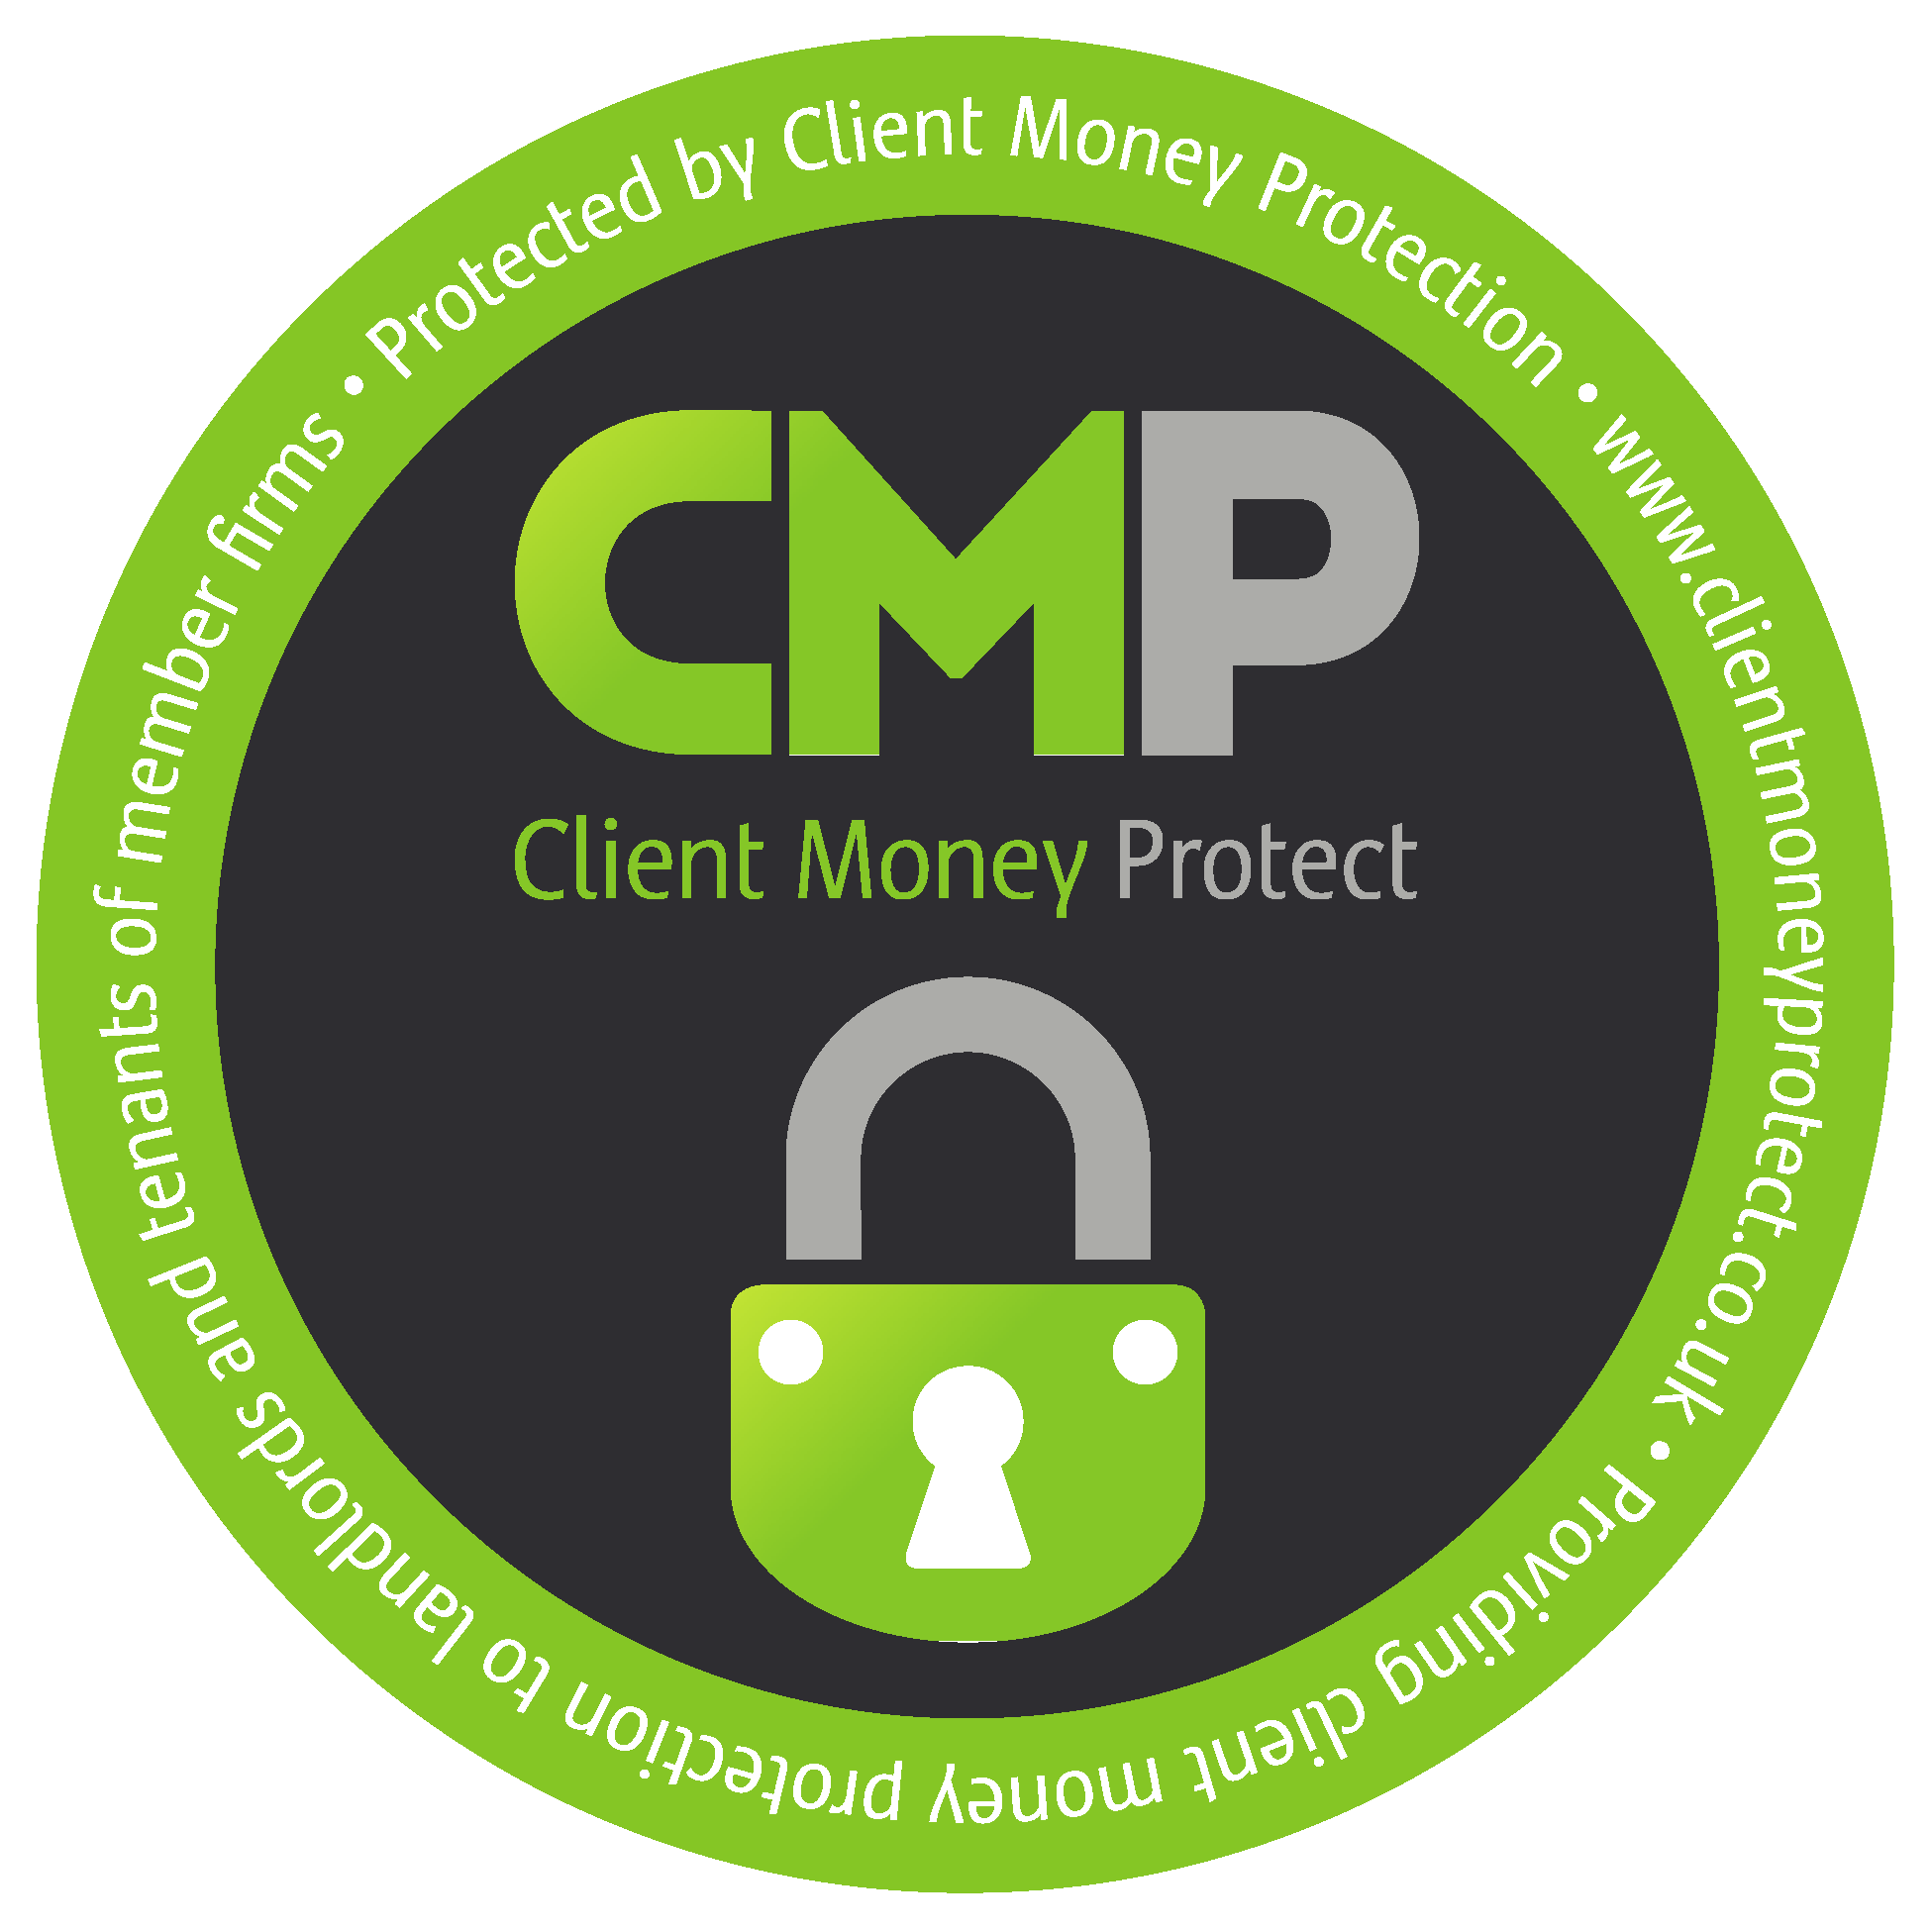 CMP Client Money Protect Logo Vector